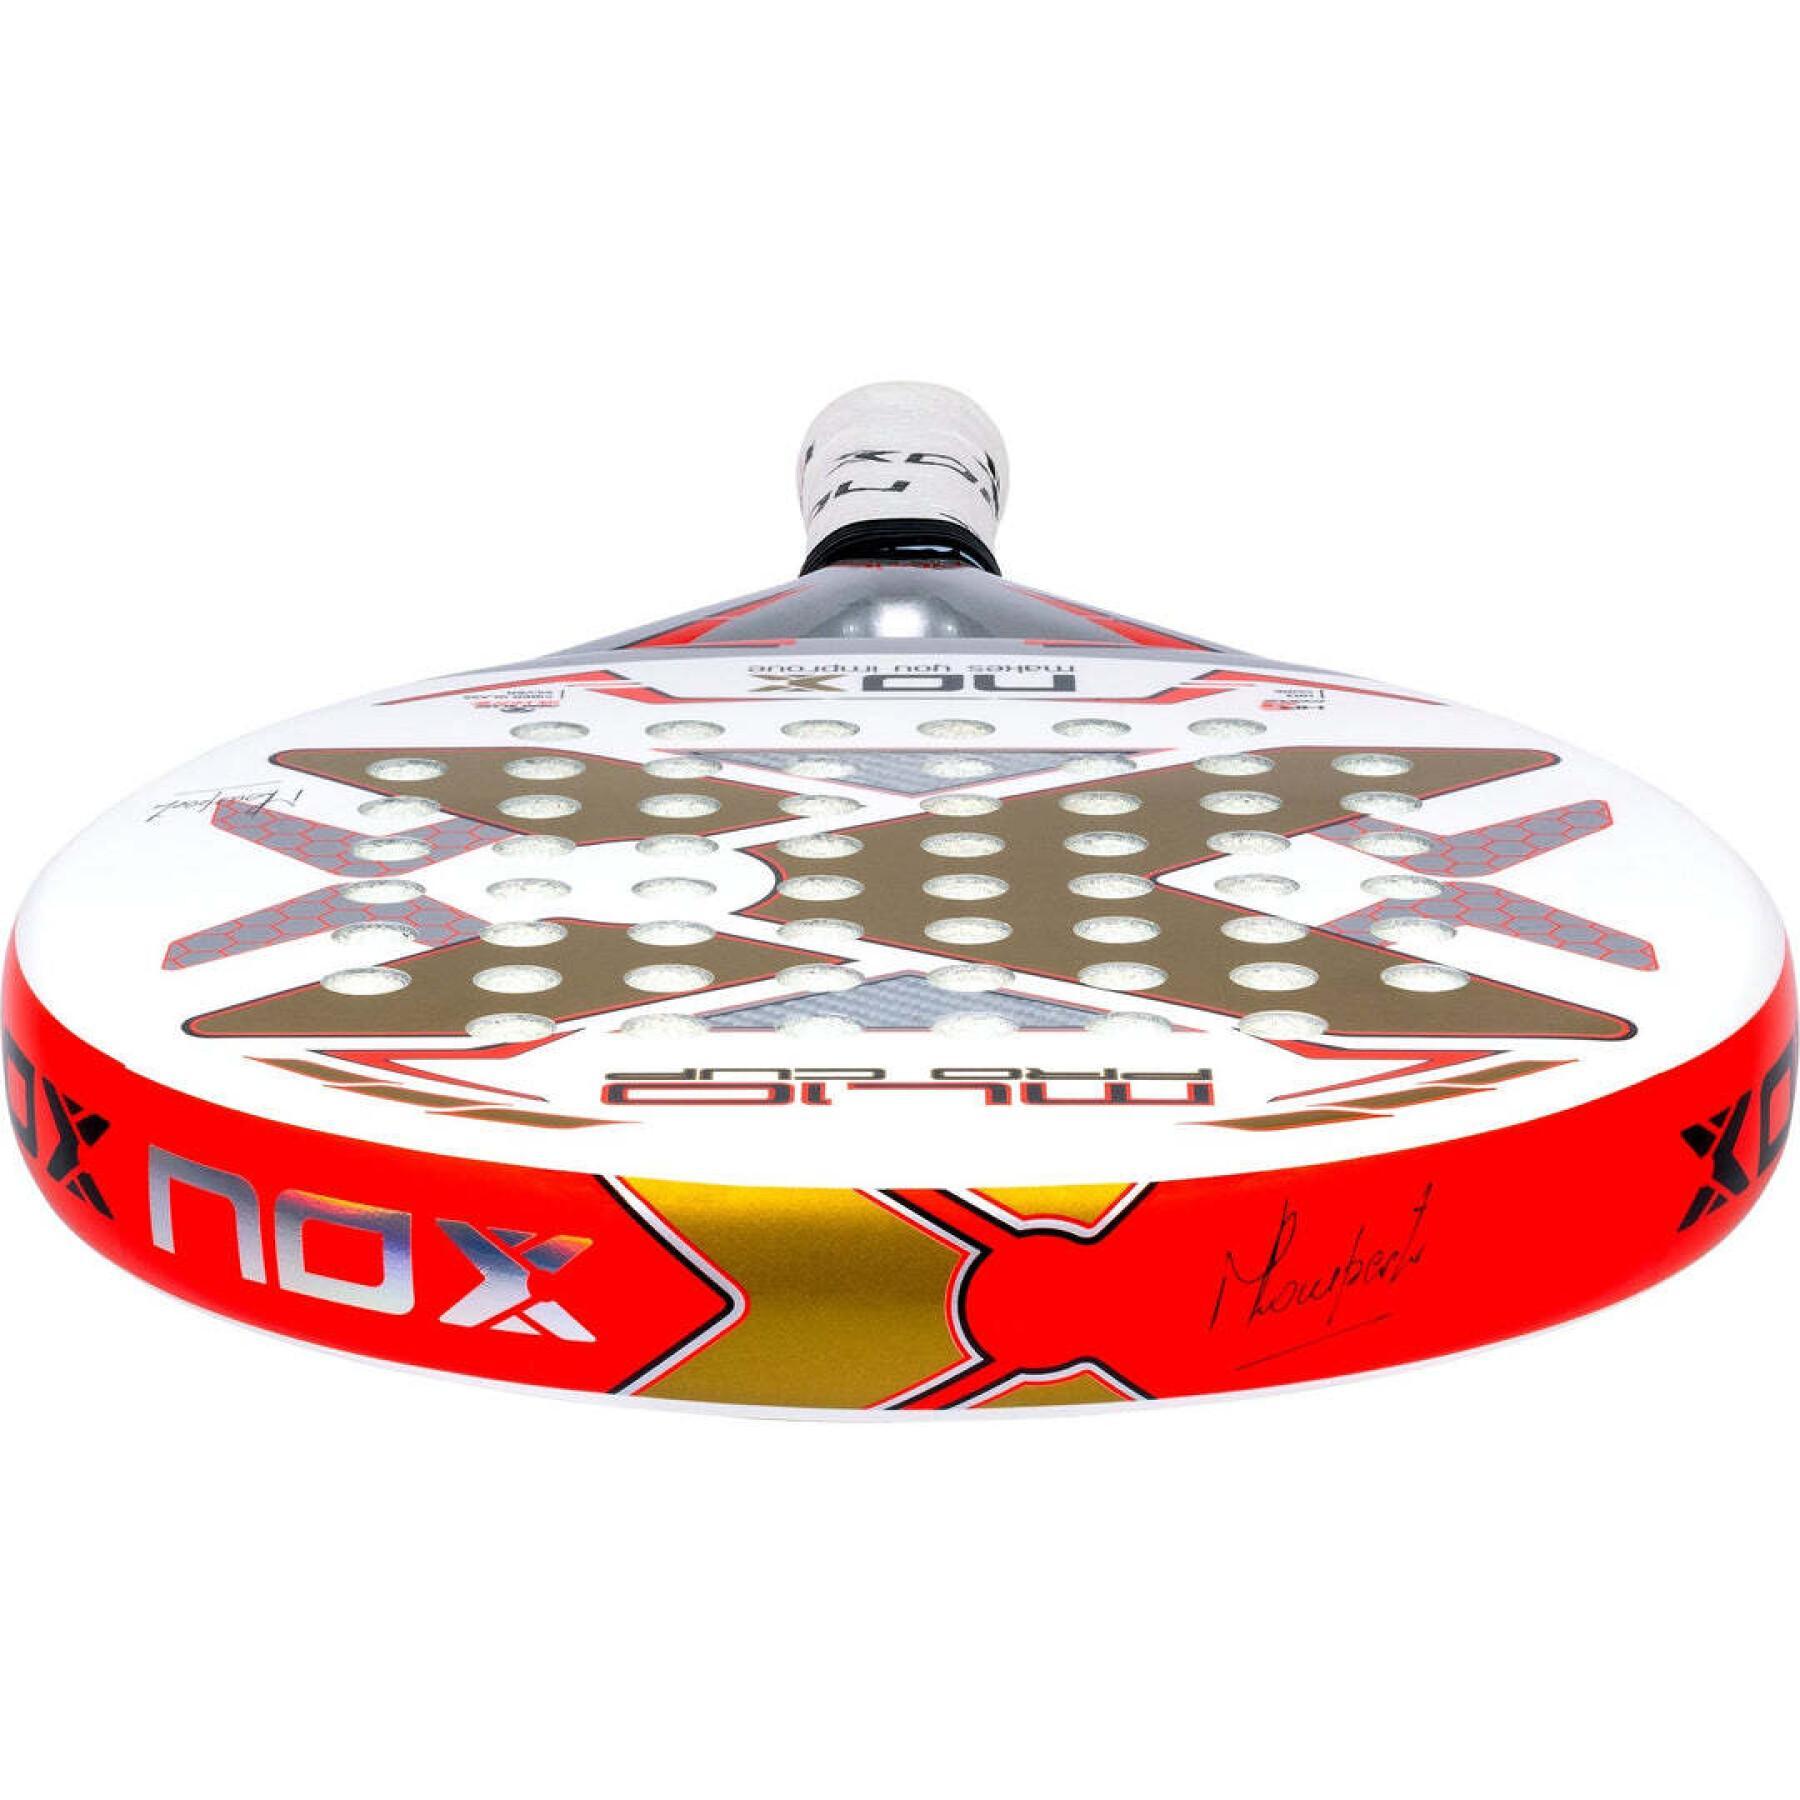 Racket from padel Nox ML10 Pro Cup Coop